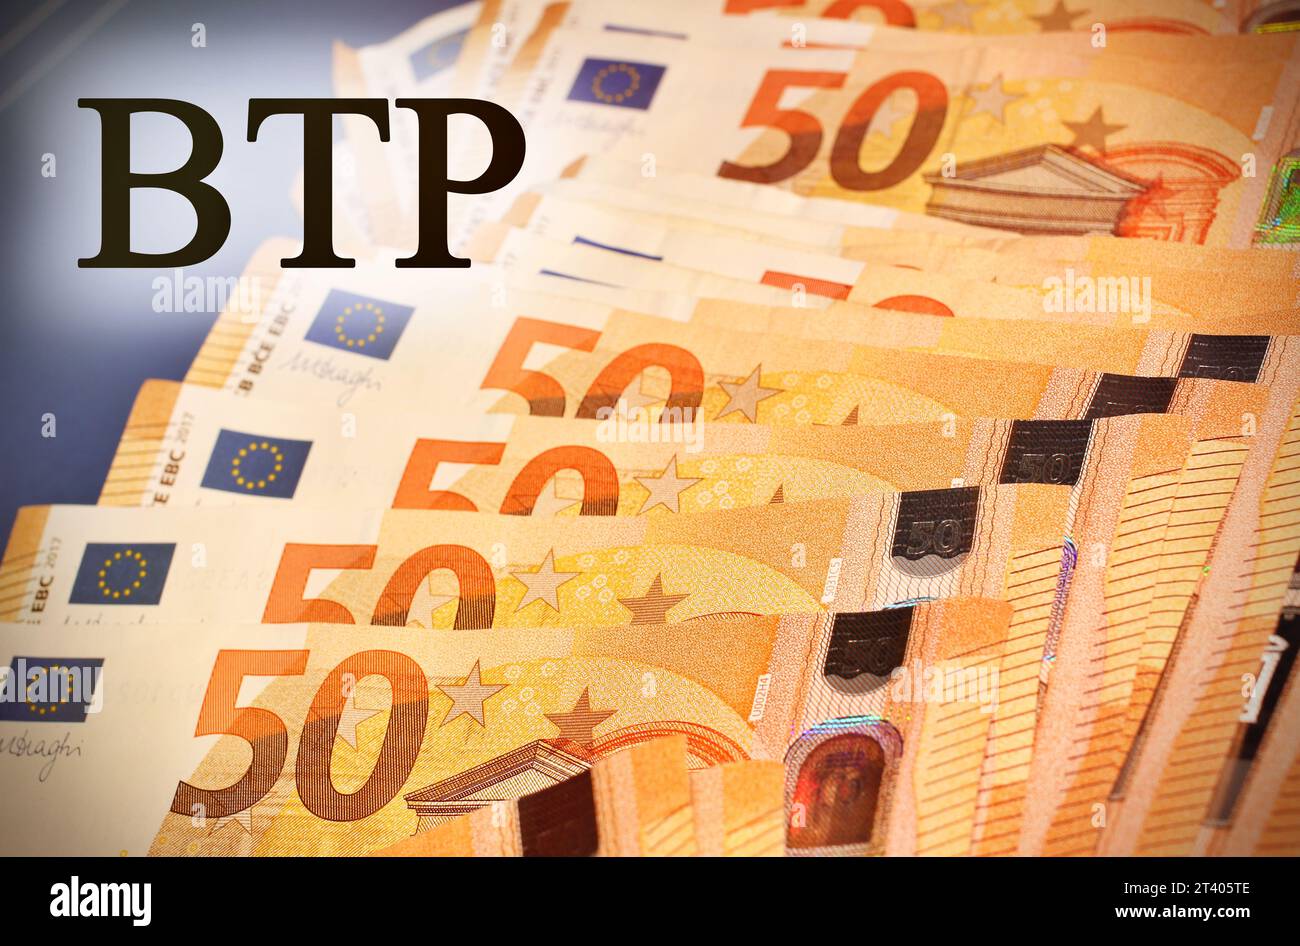 Billets en euros dont le texte “BTP” se traduit par obligations d’État italiennes. Banque D'Images